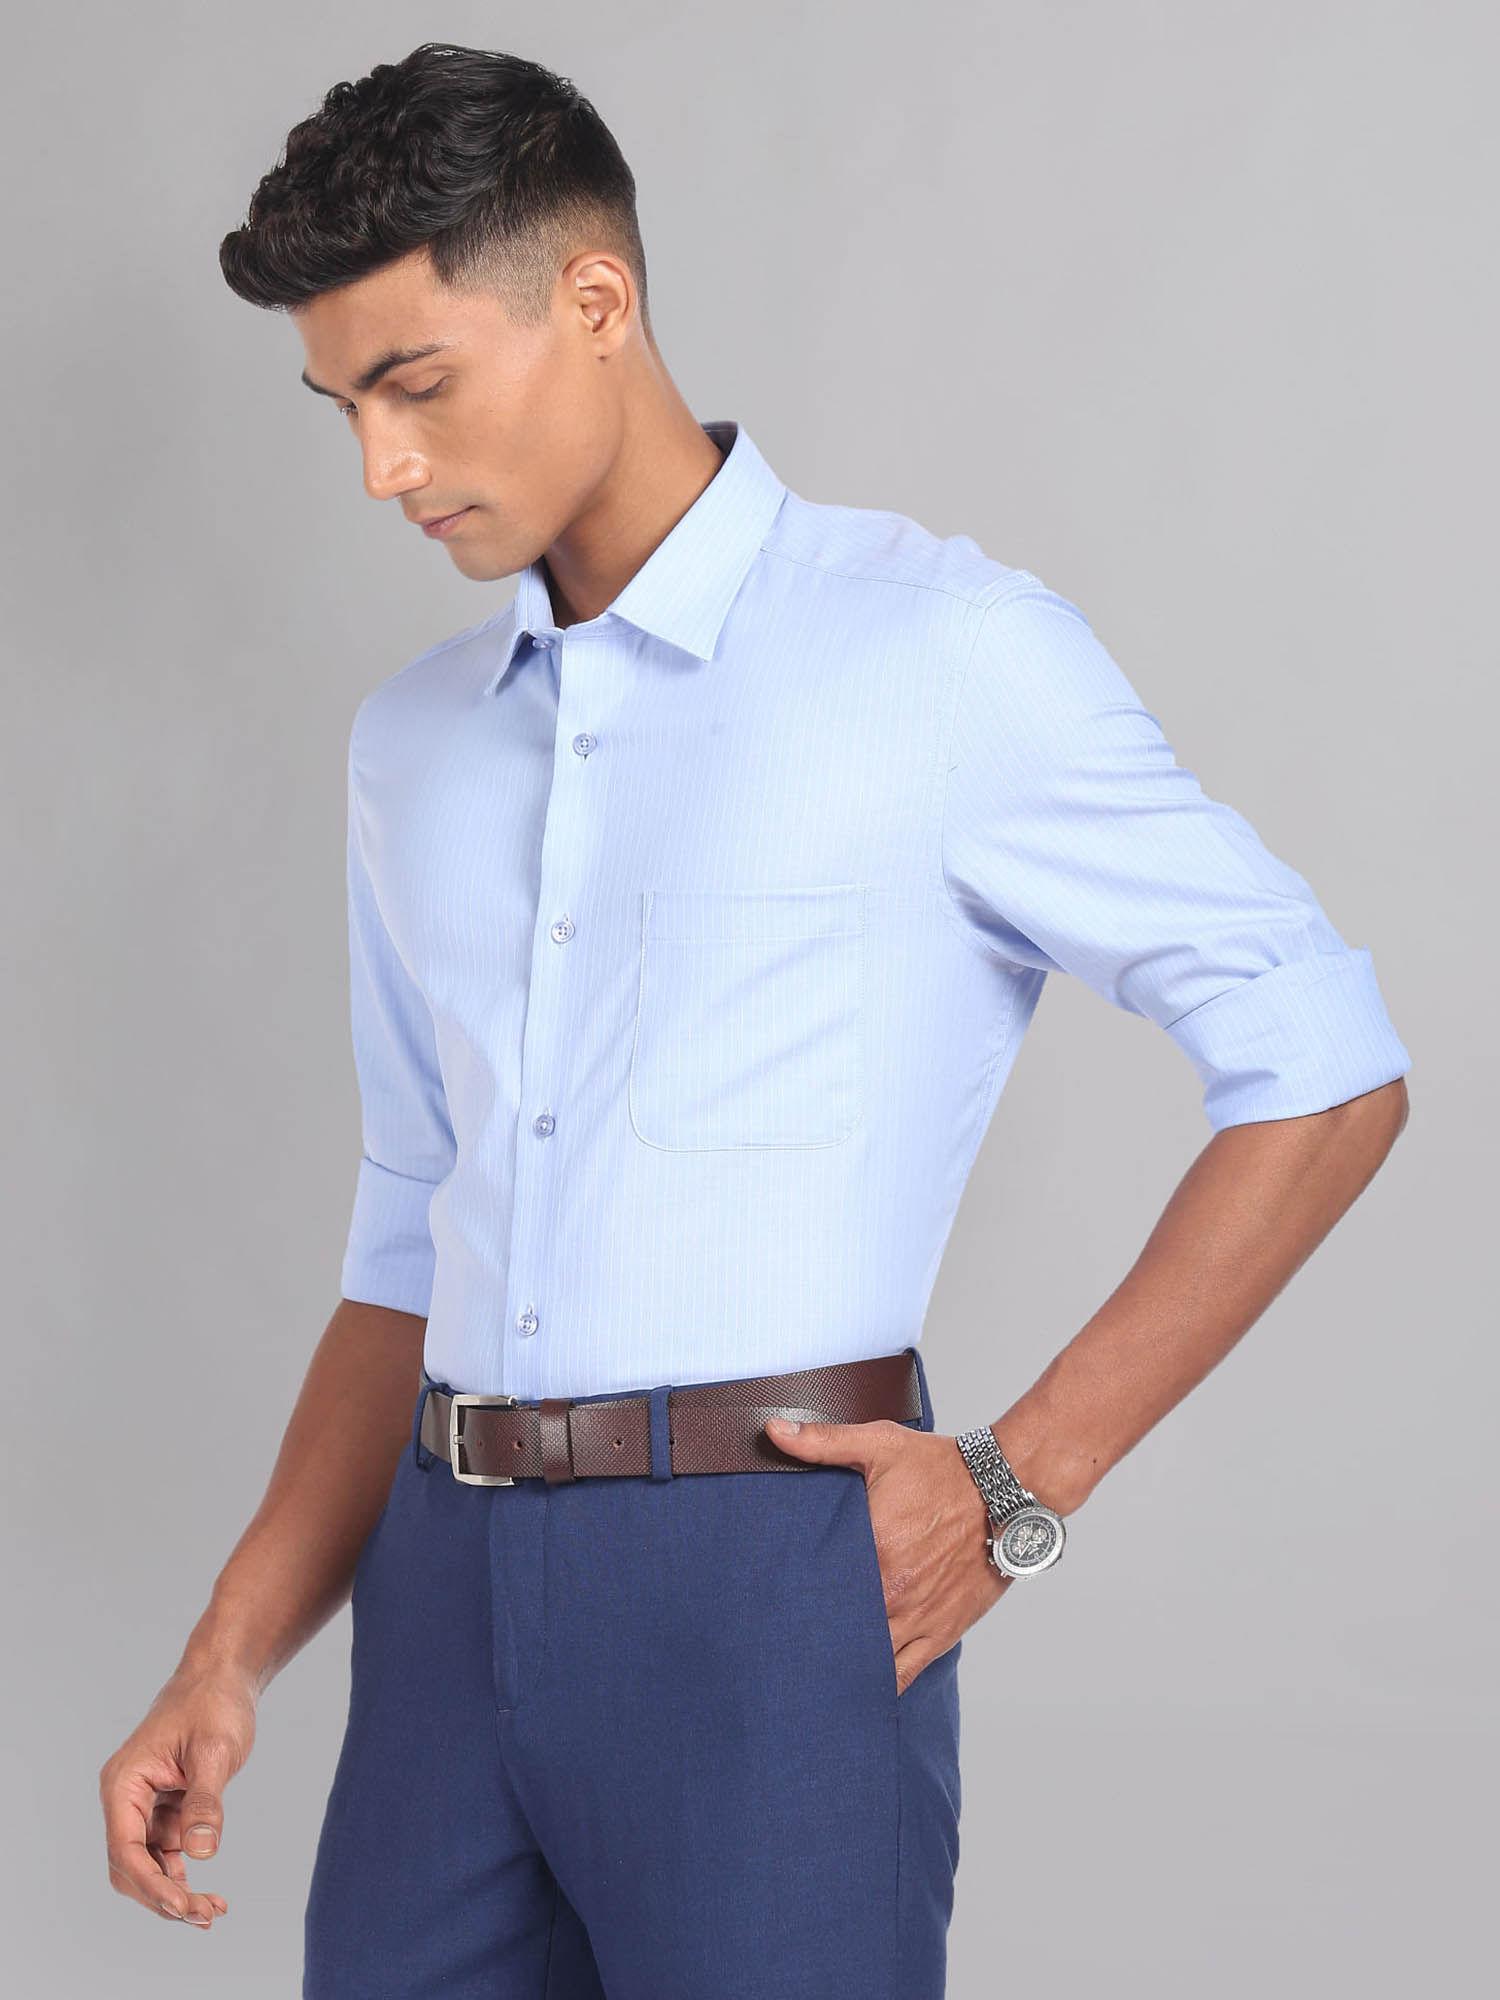 patch pocket vertical stripe formal shirt